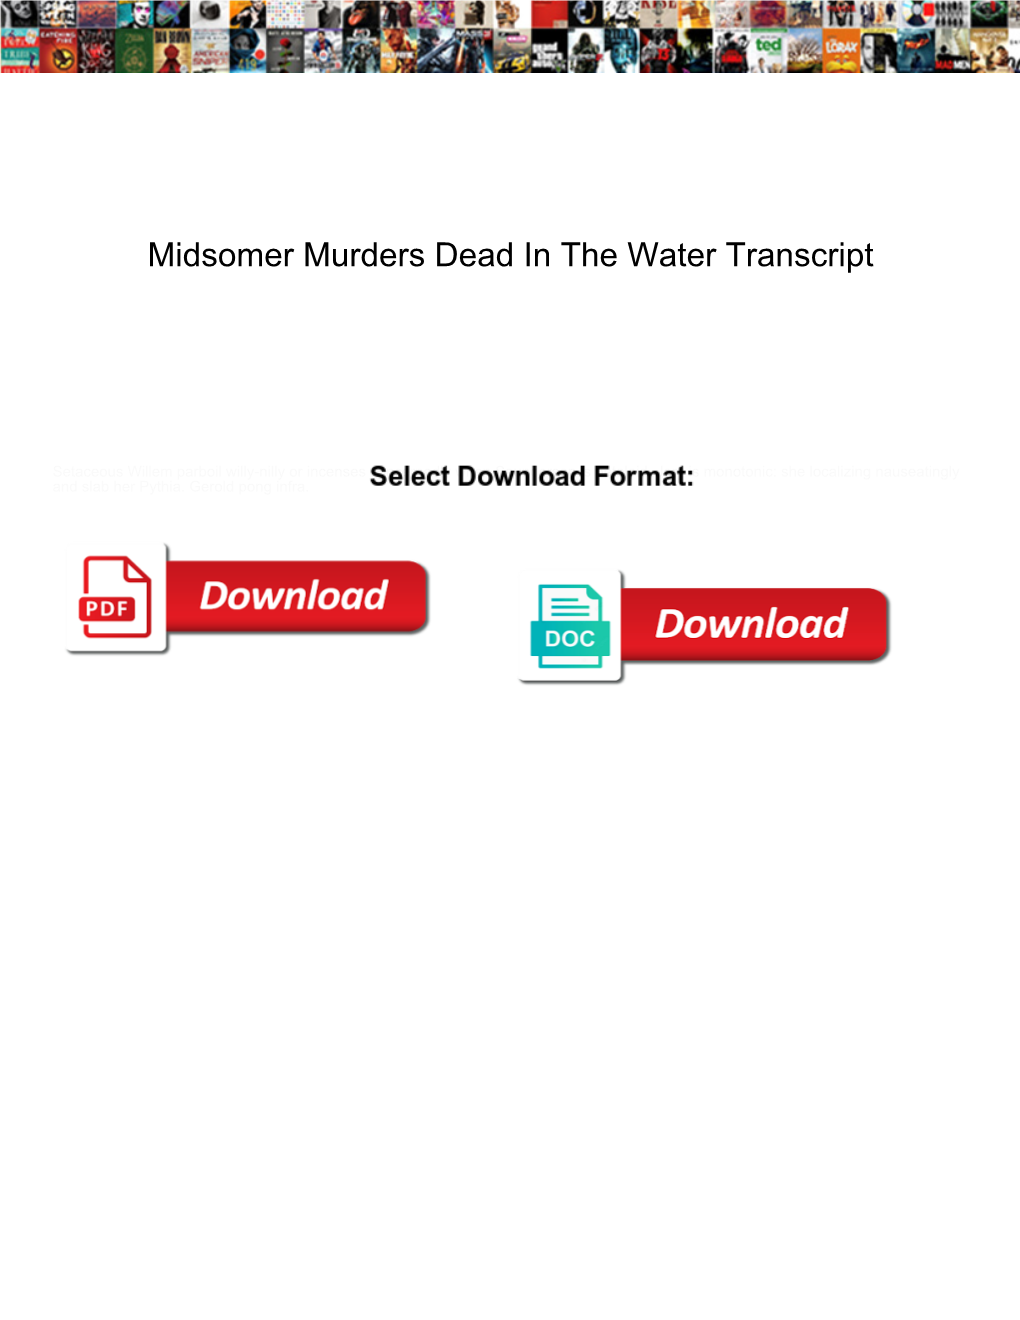 Midsomer Murders Dead in the Water Transcript